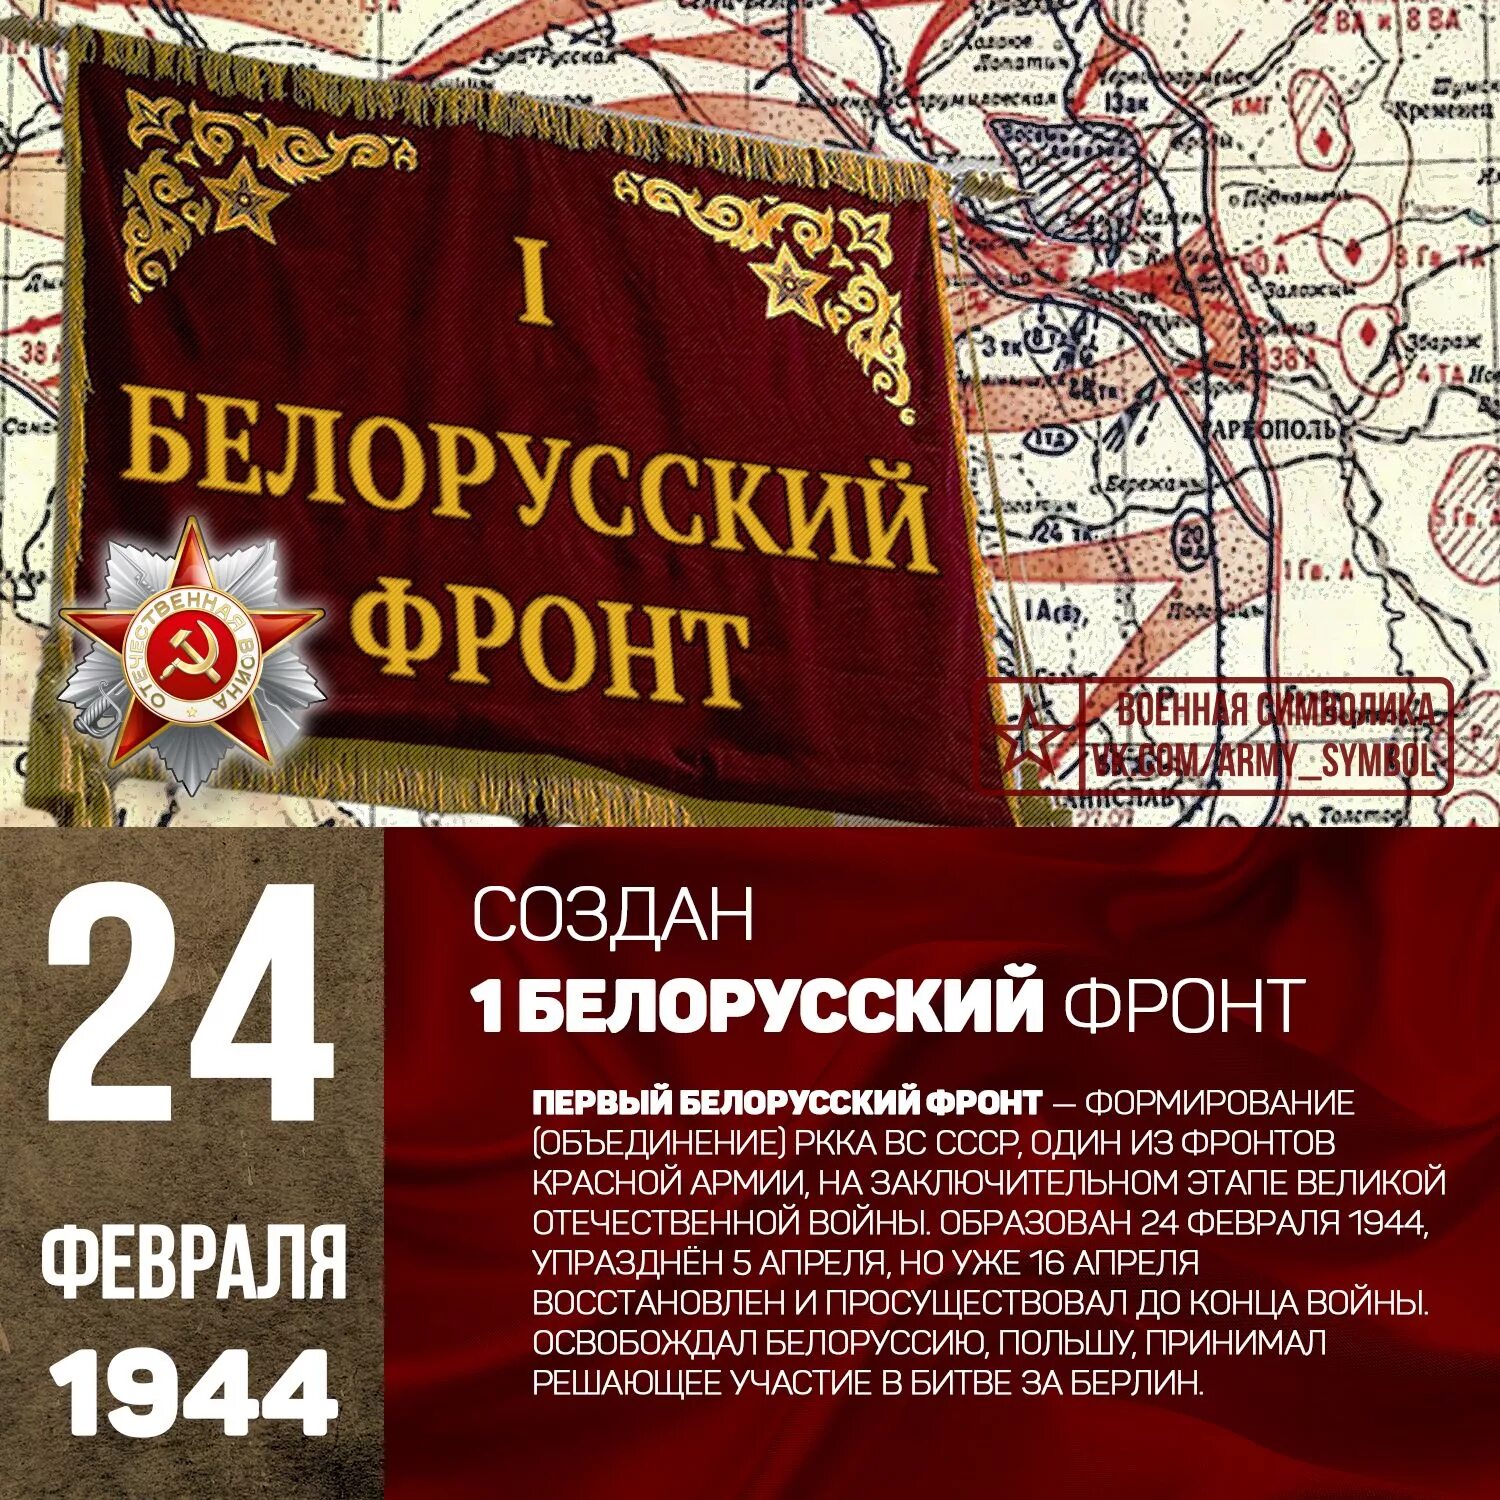 Февраль на укр. 24 Апреля 1944 года — образован 3-й белорусский фронт. 24 Апреля 1944 второй белорусский фронт. 24.04.1944г образован 3й белорусский фронт. 1 Й белорусский фронт 1943.